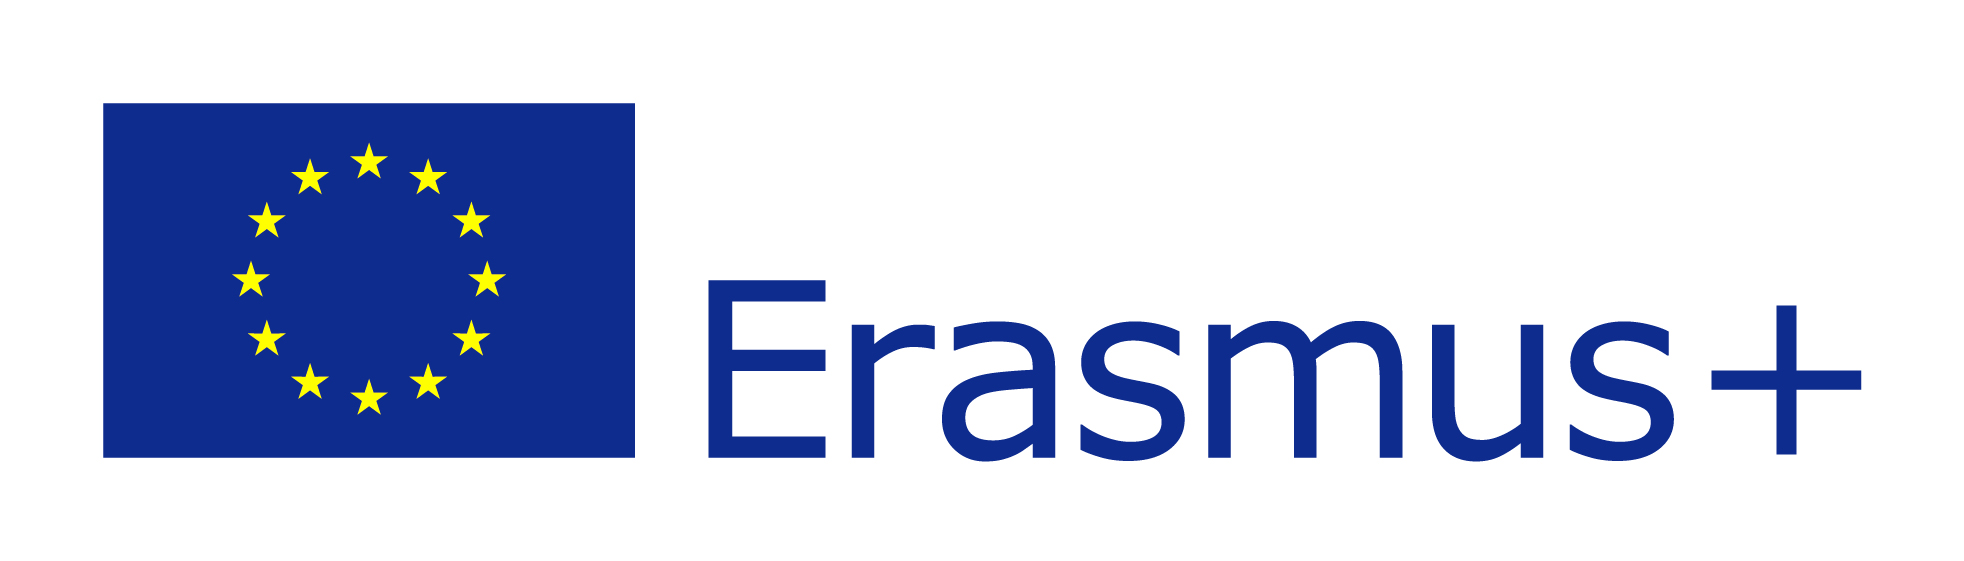 logo-erasmus-plus-transparent-1